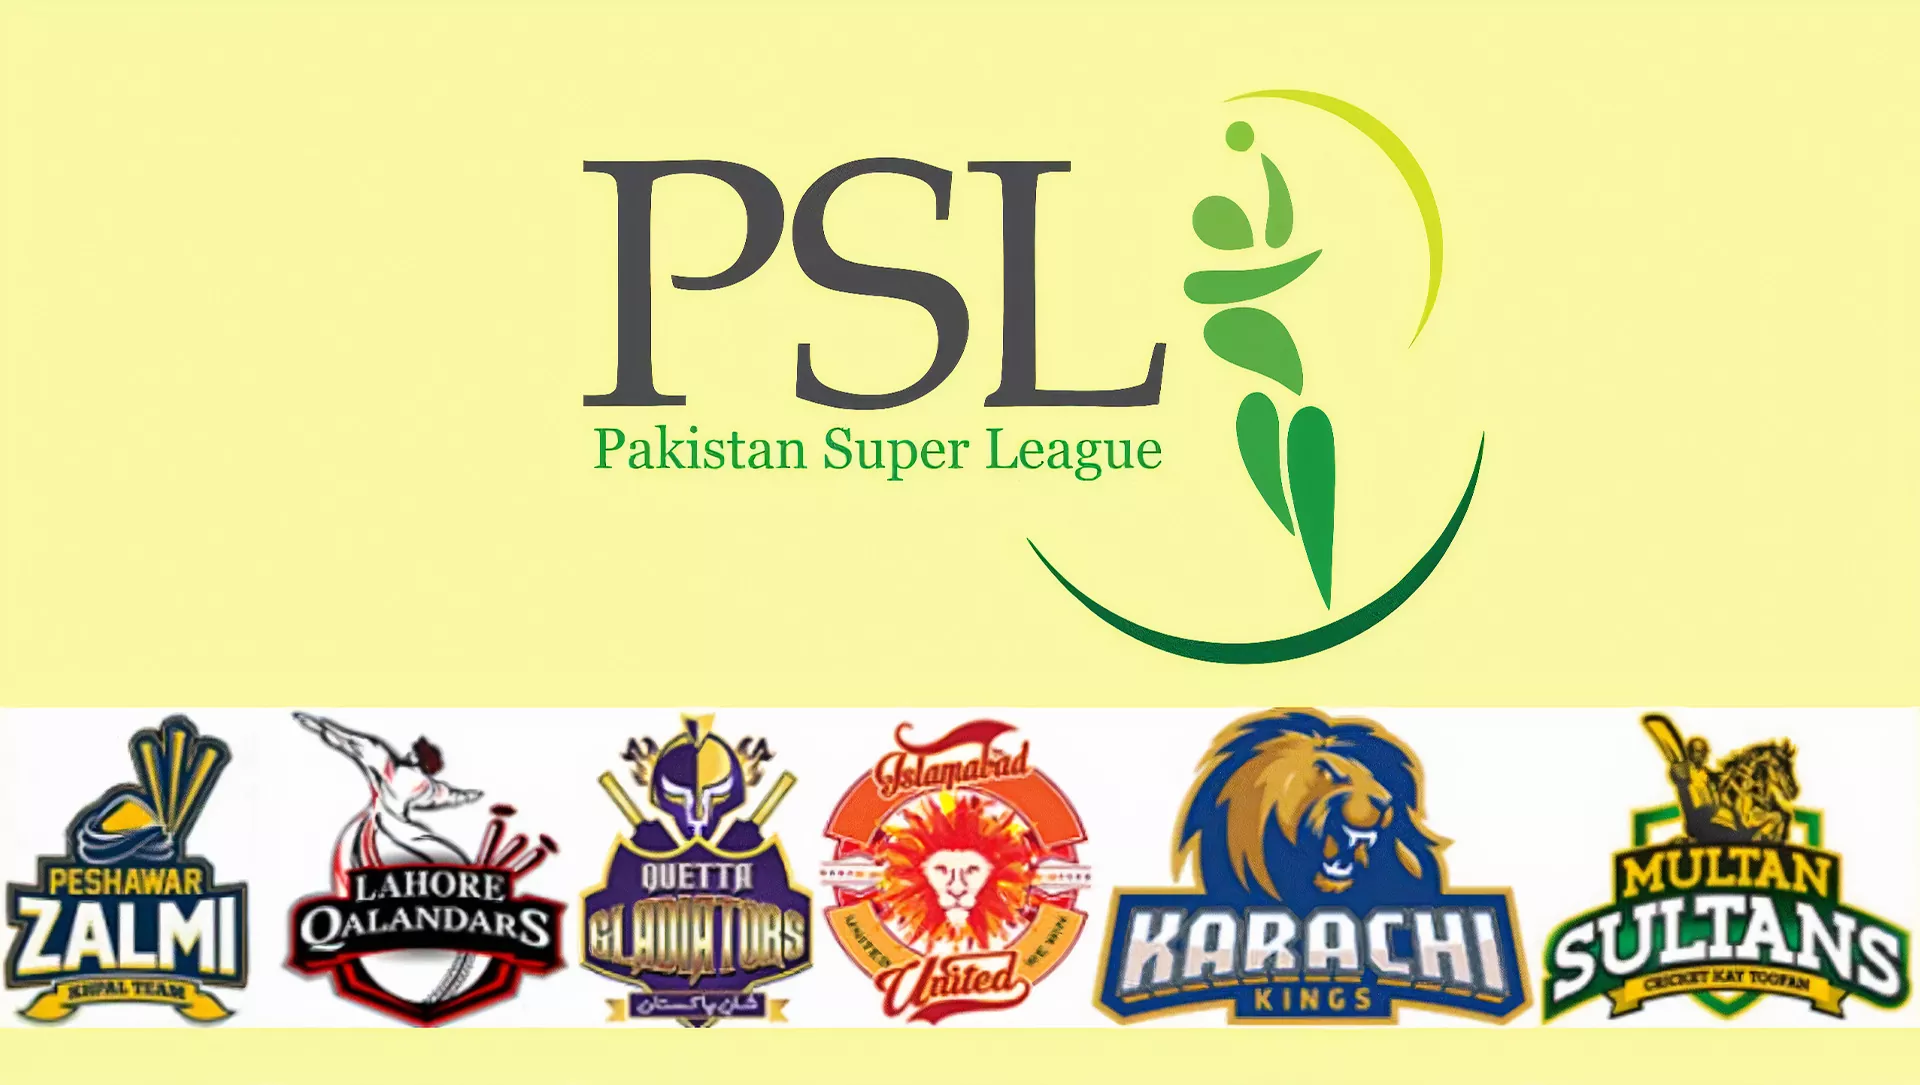 आप पाकिस्तान सुपर लीग पर दांव जगह कर सकते हैं (पीएसएल) साइट पर पंजीकरण के बाद